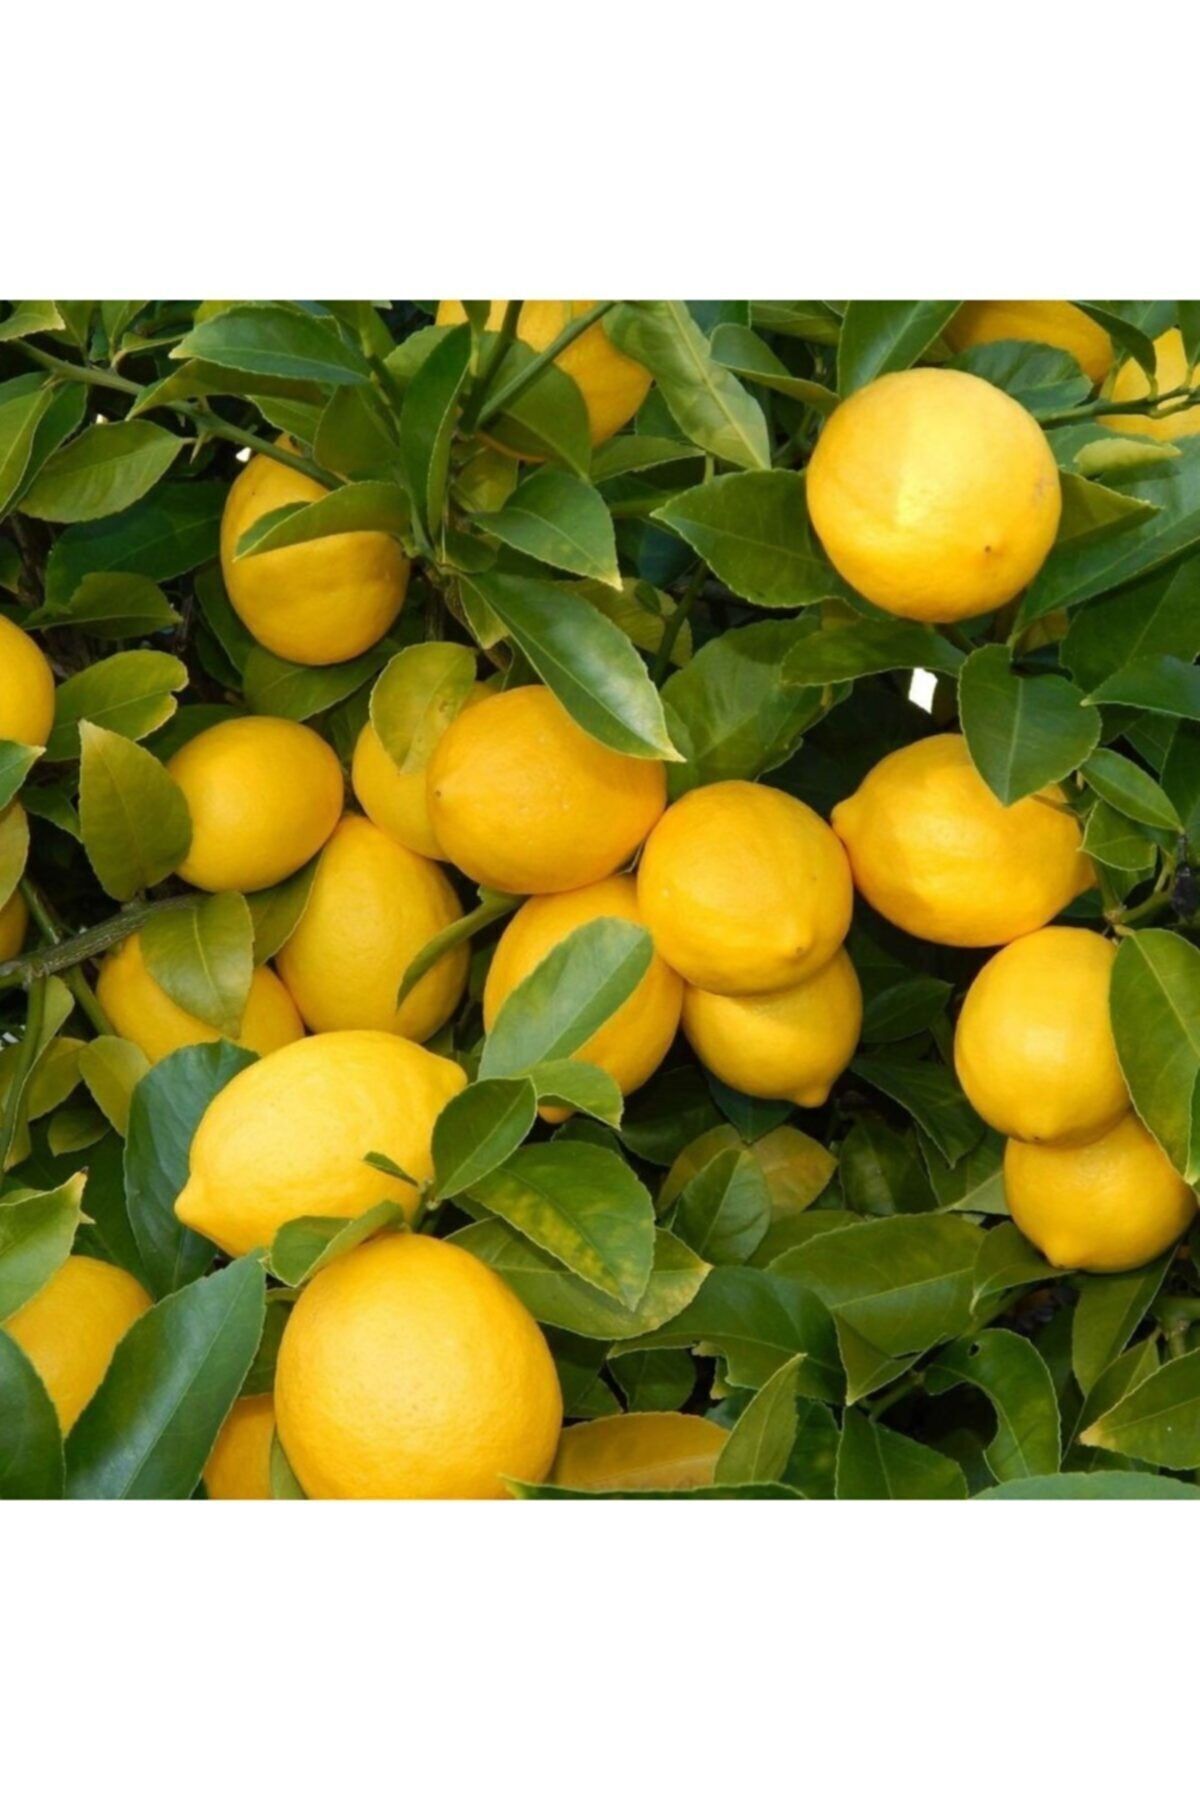 AAC TARIM 200-250 Cm Aşılı Bol Verimli Yediveren Limon Fidanı 3-4 Yaş